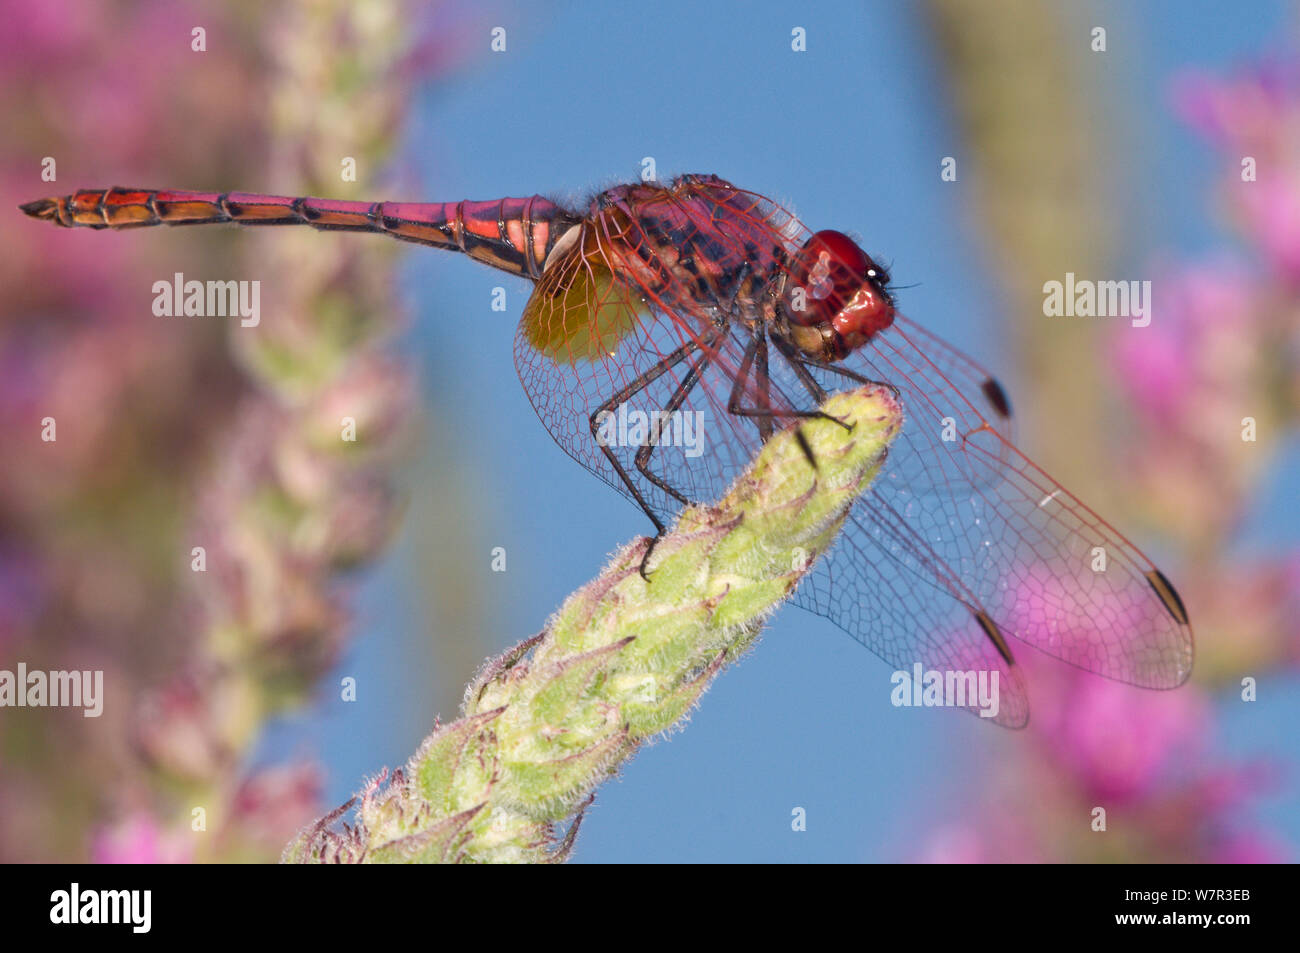 Ruddy darter dragonfly maschio (Sympetrum sanguineum) sul fiore spike, Lago di Mezzano, vicino a Latera, Lazio, Italia, Luglio Foto Stock